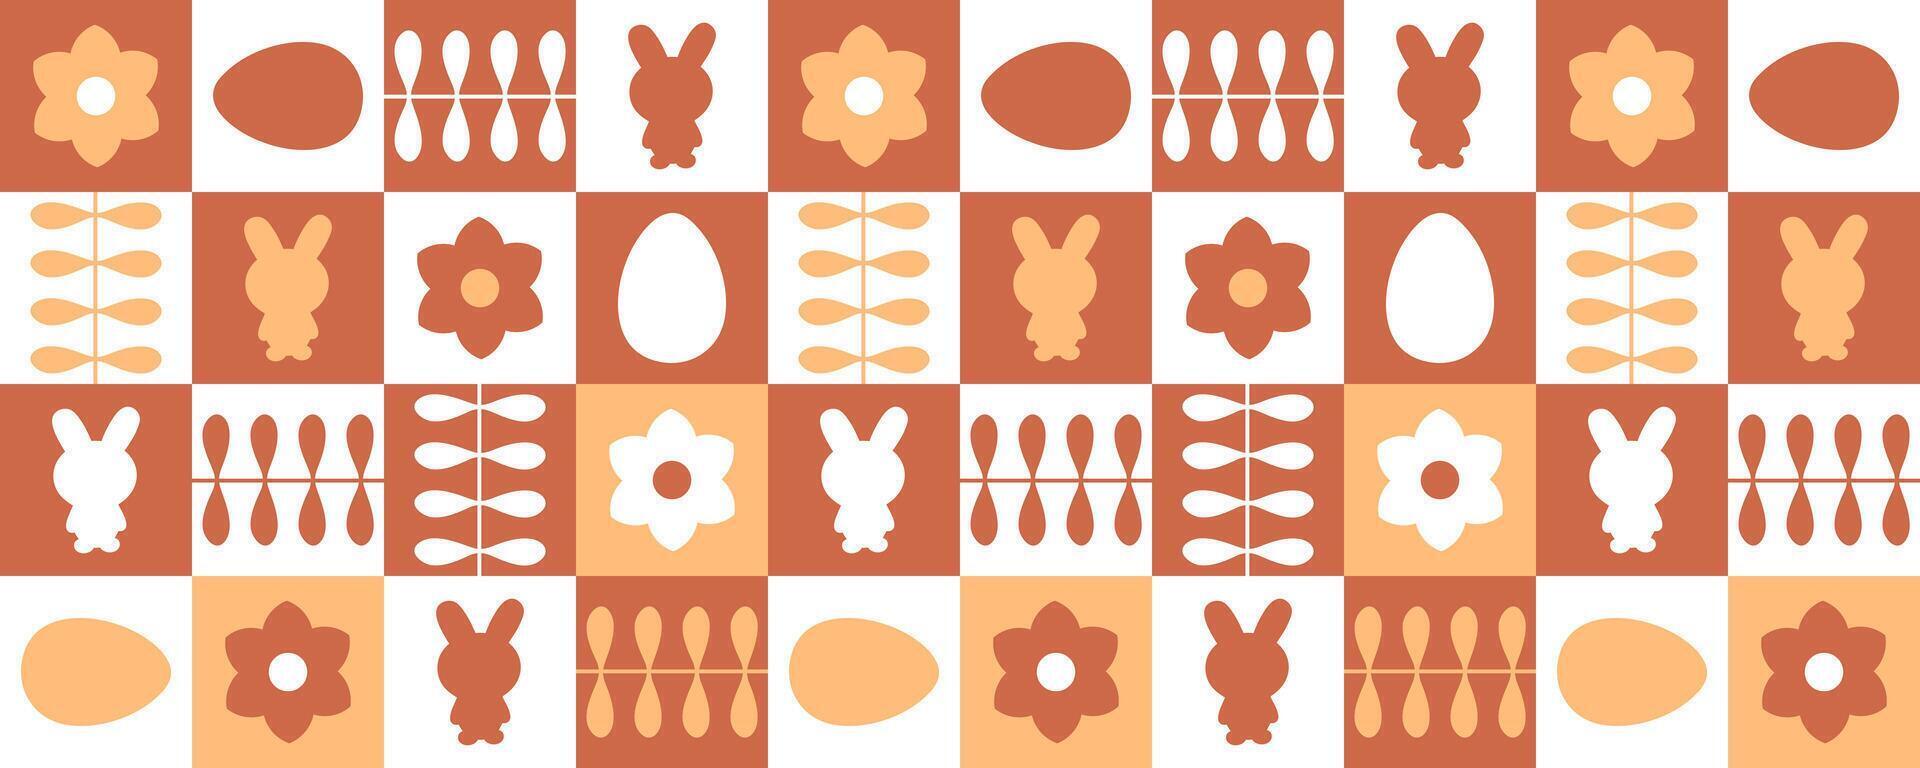 suizo estilo monocromo Pascua de Resurrección horizontal modelo con conejos, huevos y flores impresión para tarjeta, taza, taza, bandera. Perfecto primavera diseño. vector